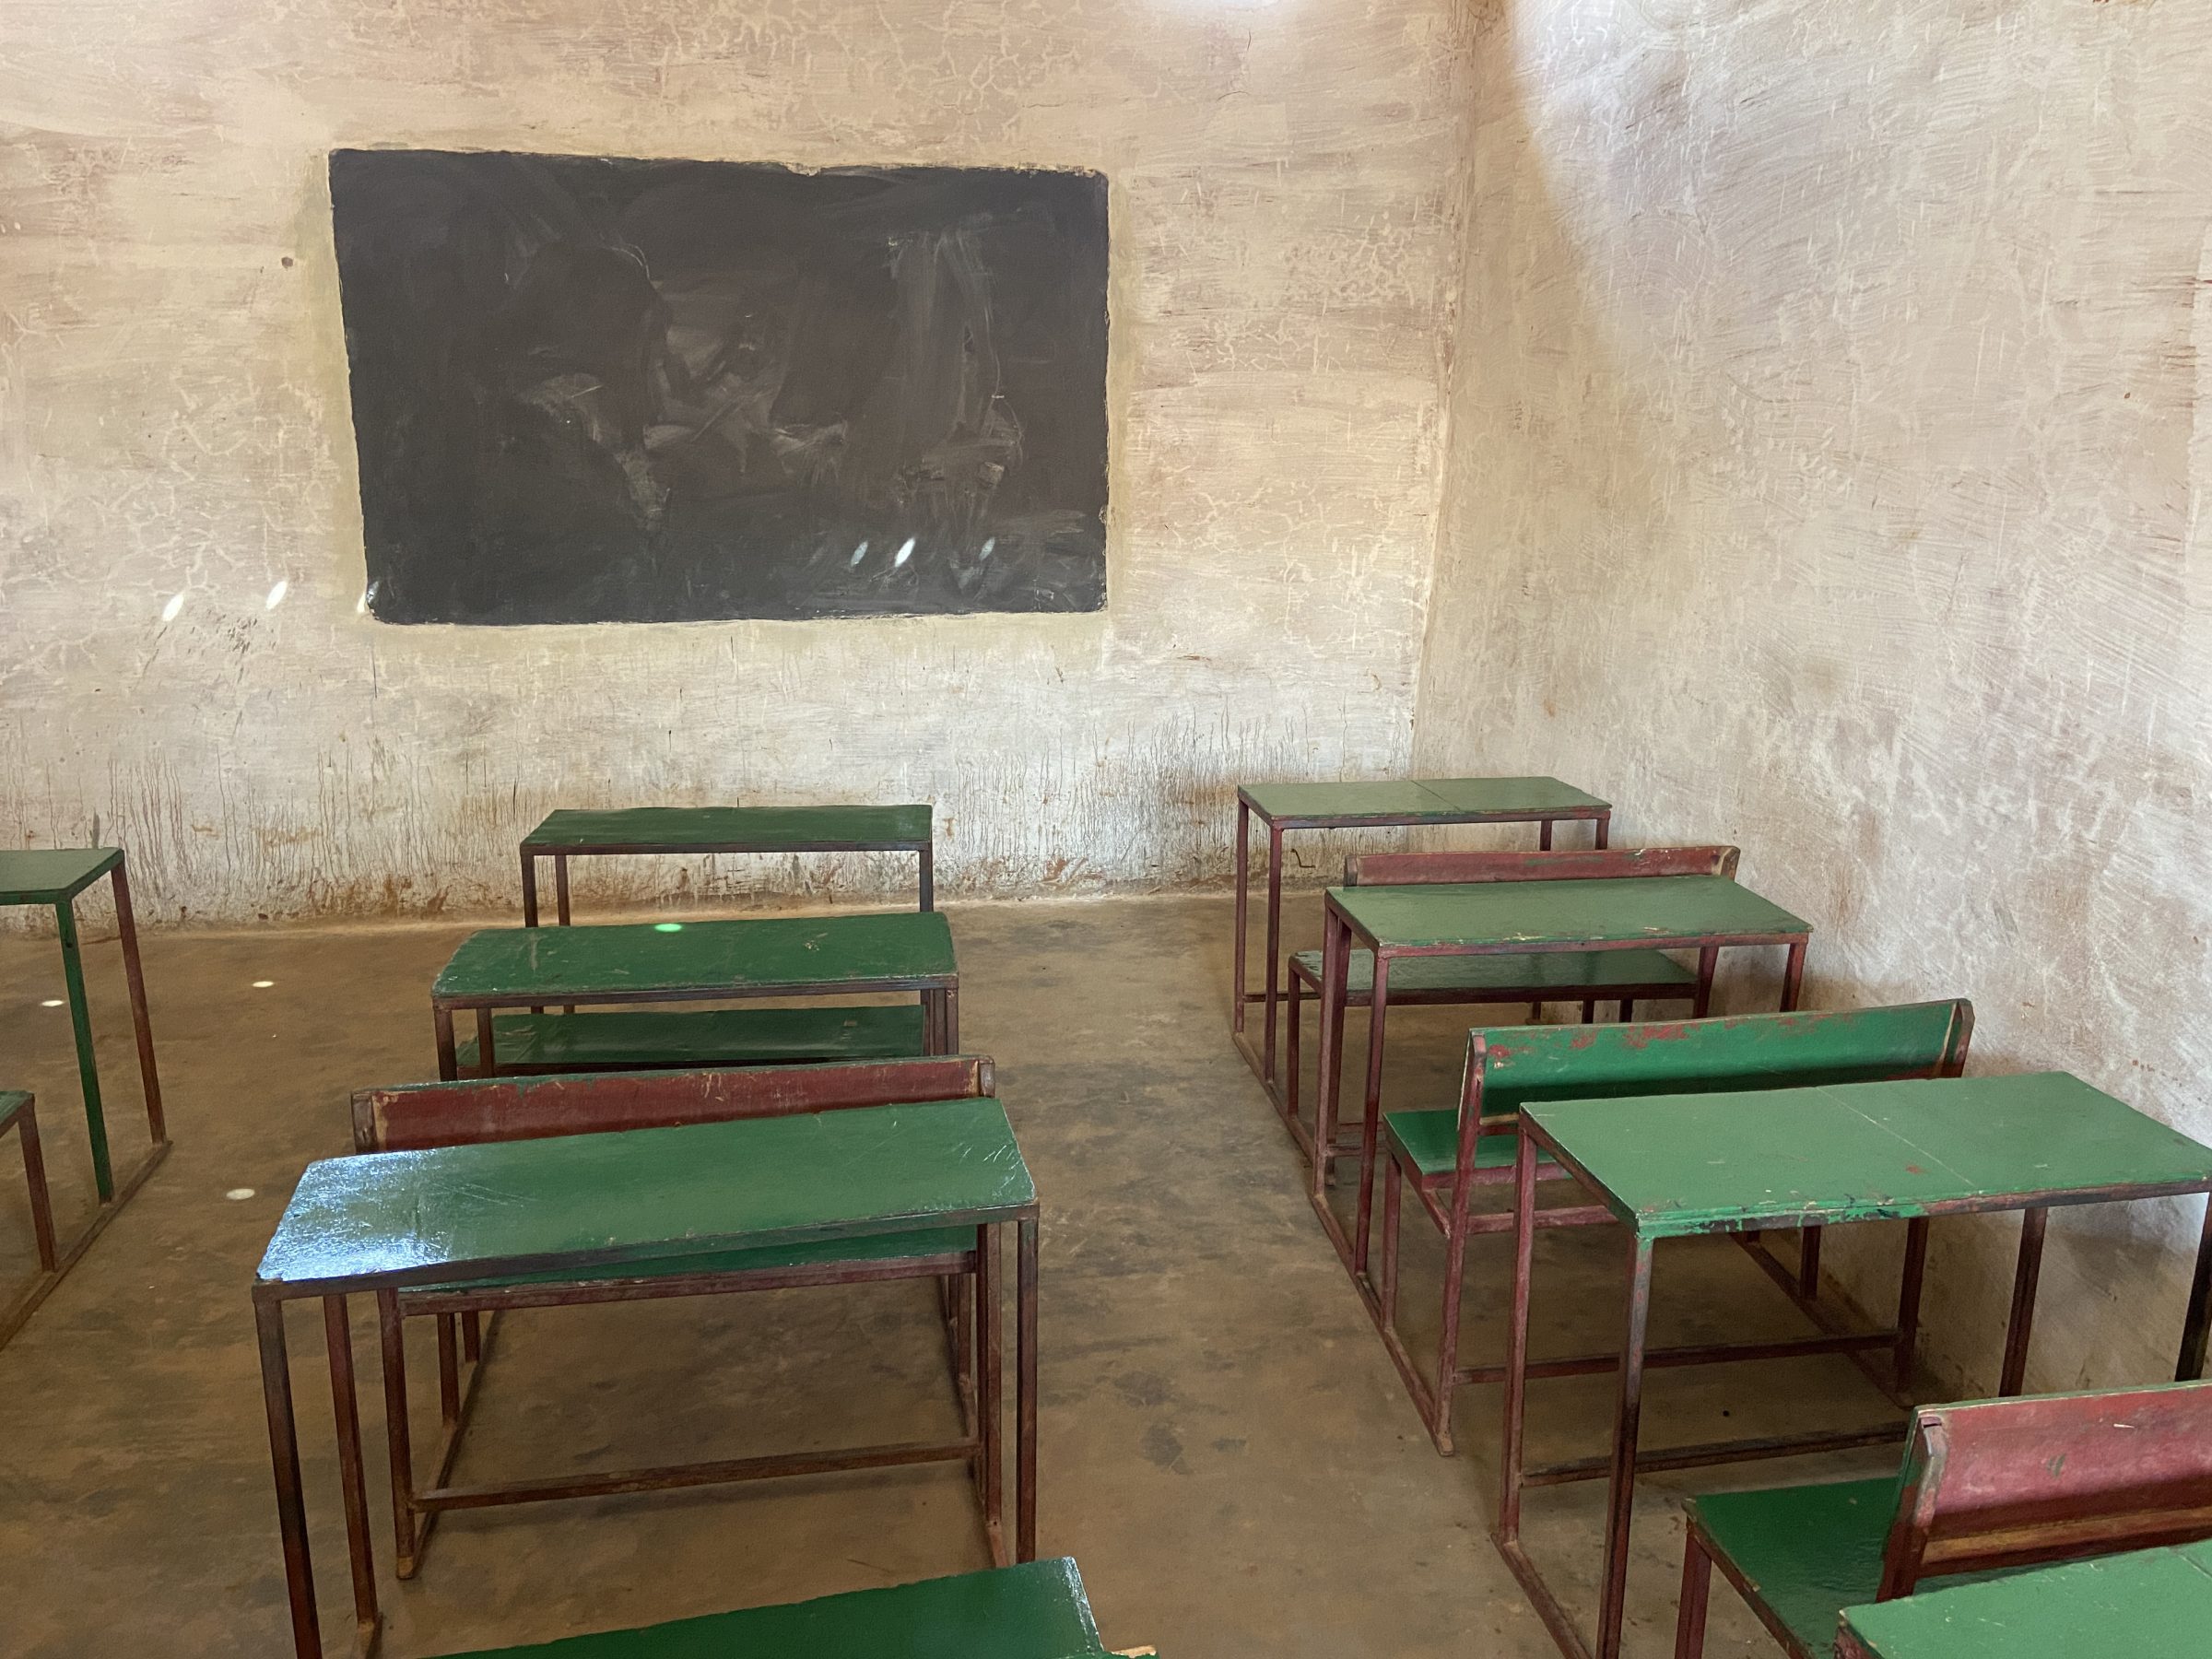 Schoolbanken en krijtbord | Overlanden in Guinea Bissau